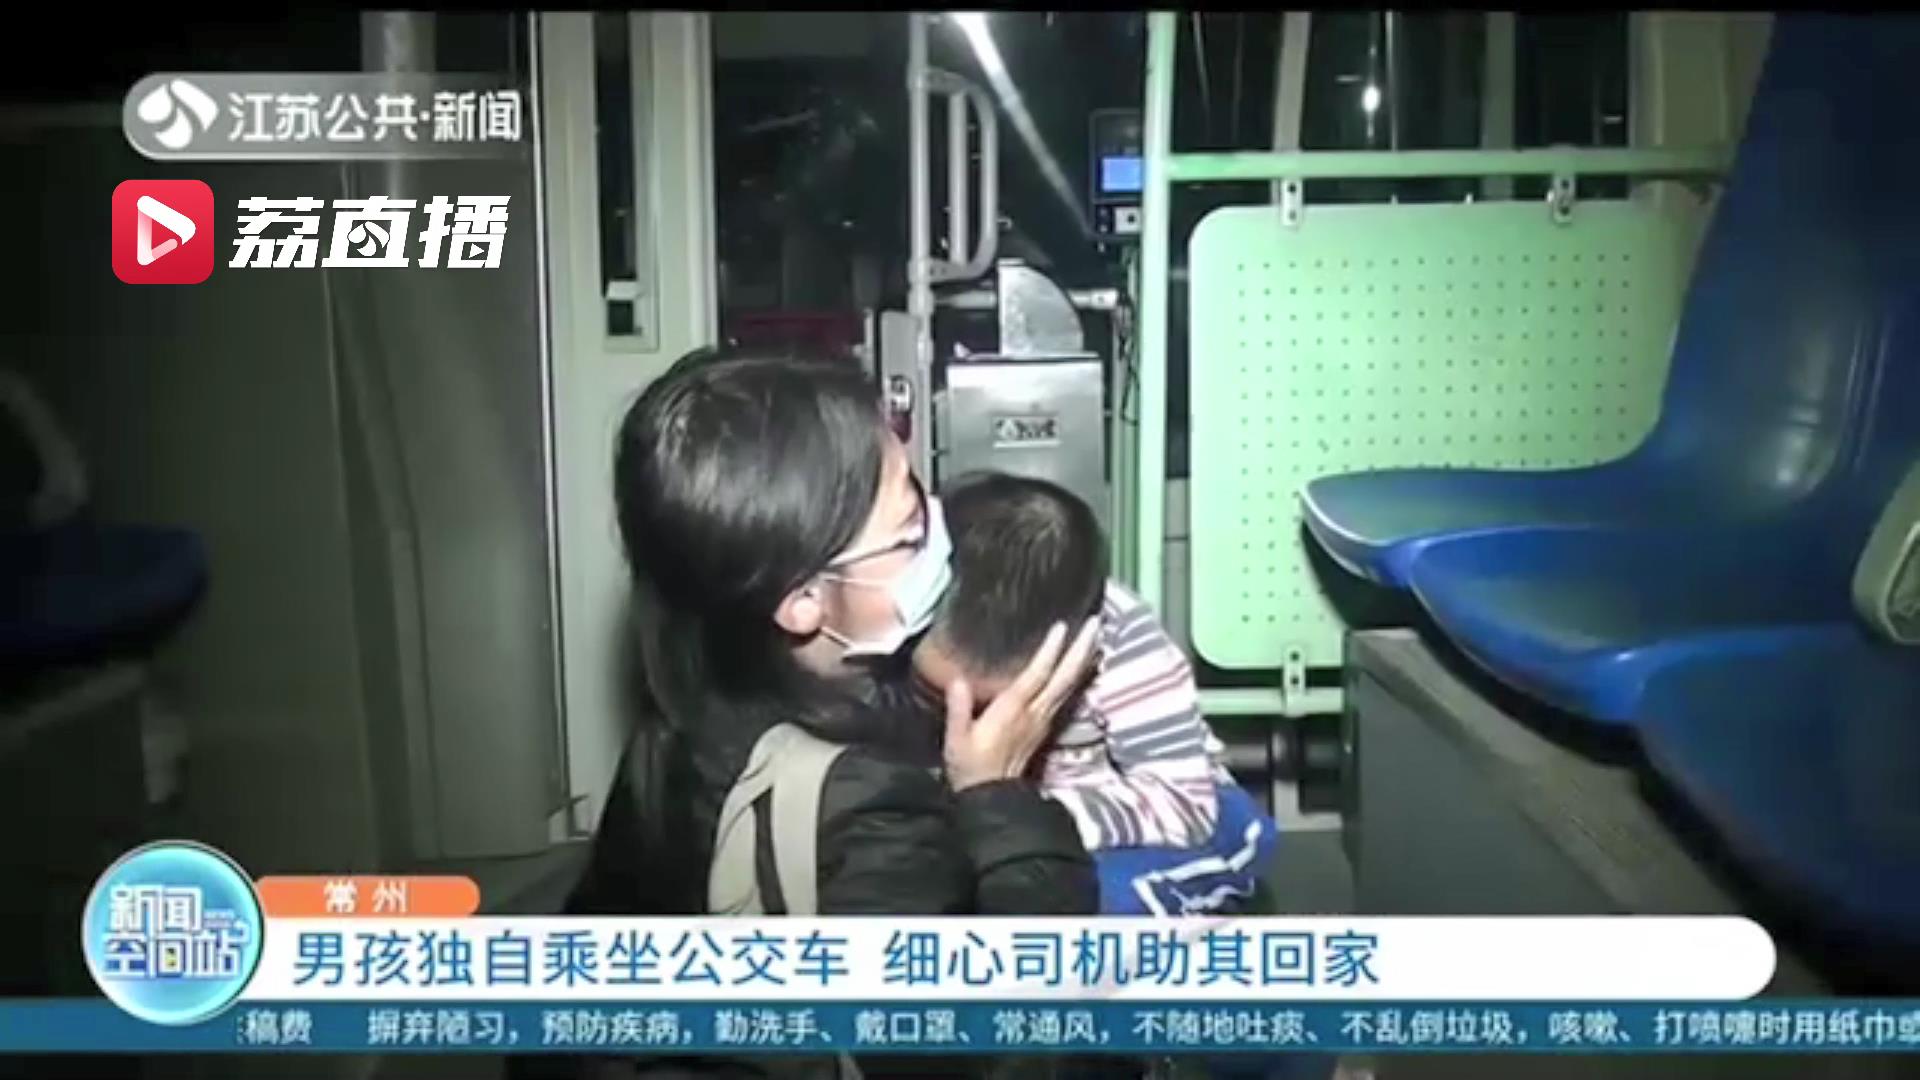 六岁男孩独自乘坐公交车 细心司机发现后助其找到妈妈